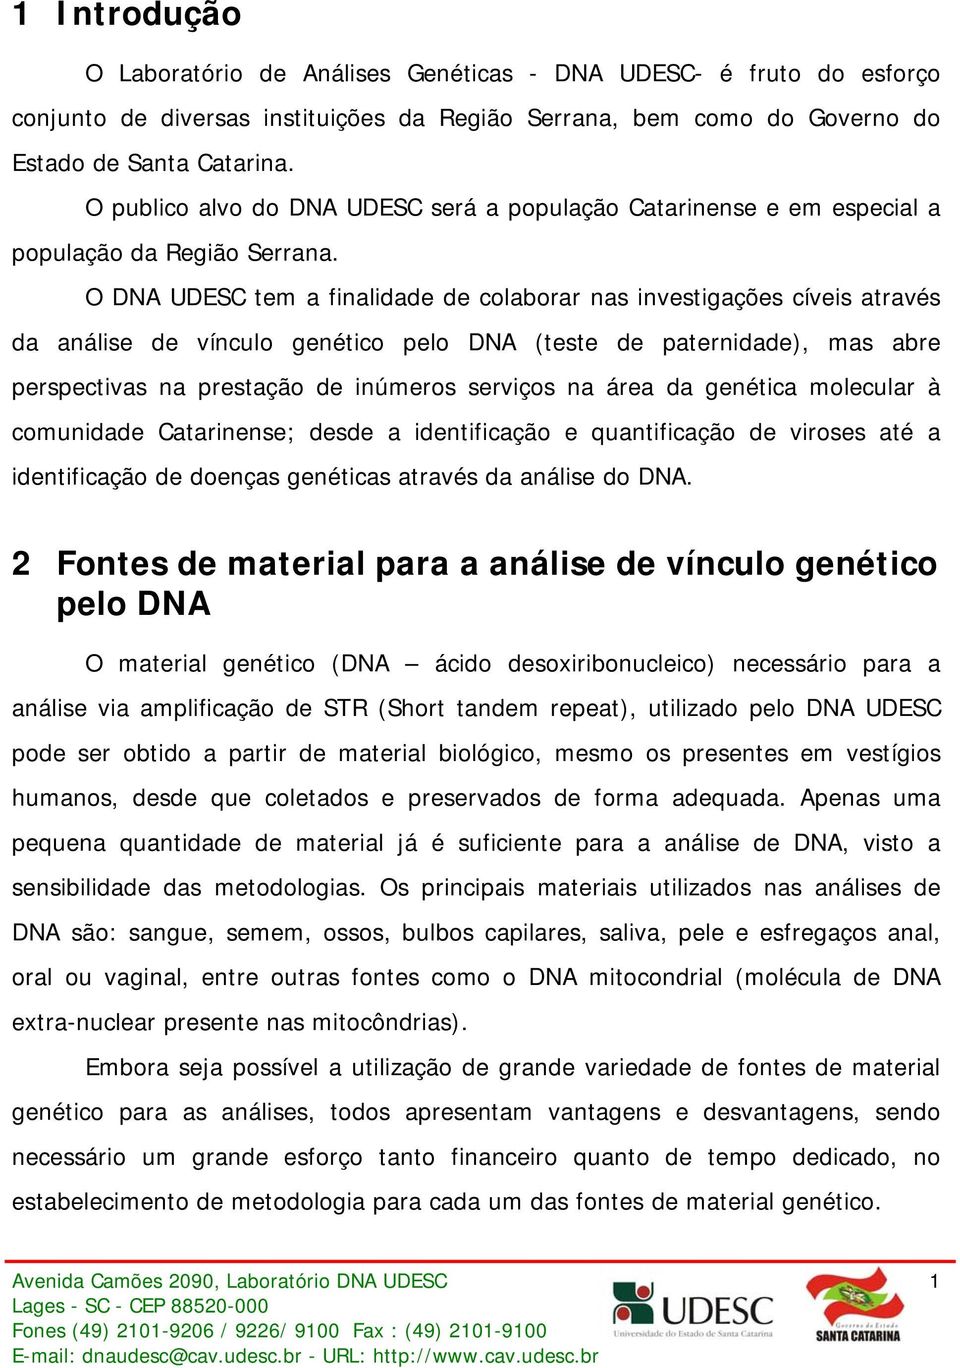 O DNA UDESC tem a finalidade de colaborar nas investigações cíveis através da análise de vínculo genético pelo DNA (teste de paternidade), mas abre perspectivas na prestação de inúmeros serviços na